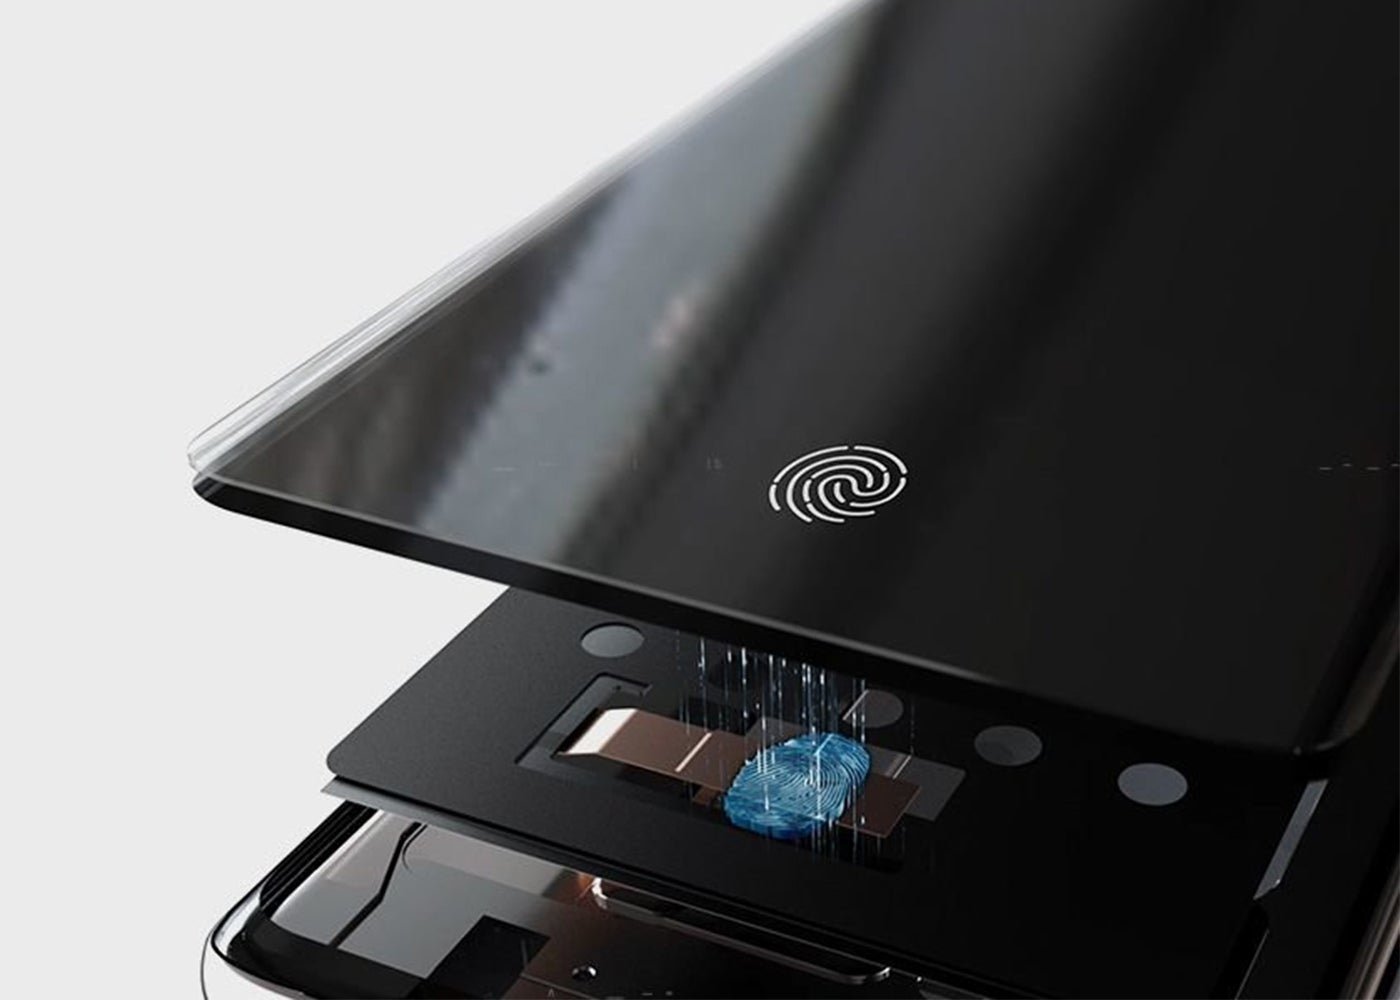 Samsung Galaxy S10, lector de huellas en pantalla